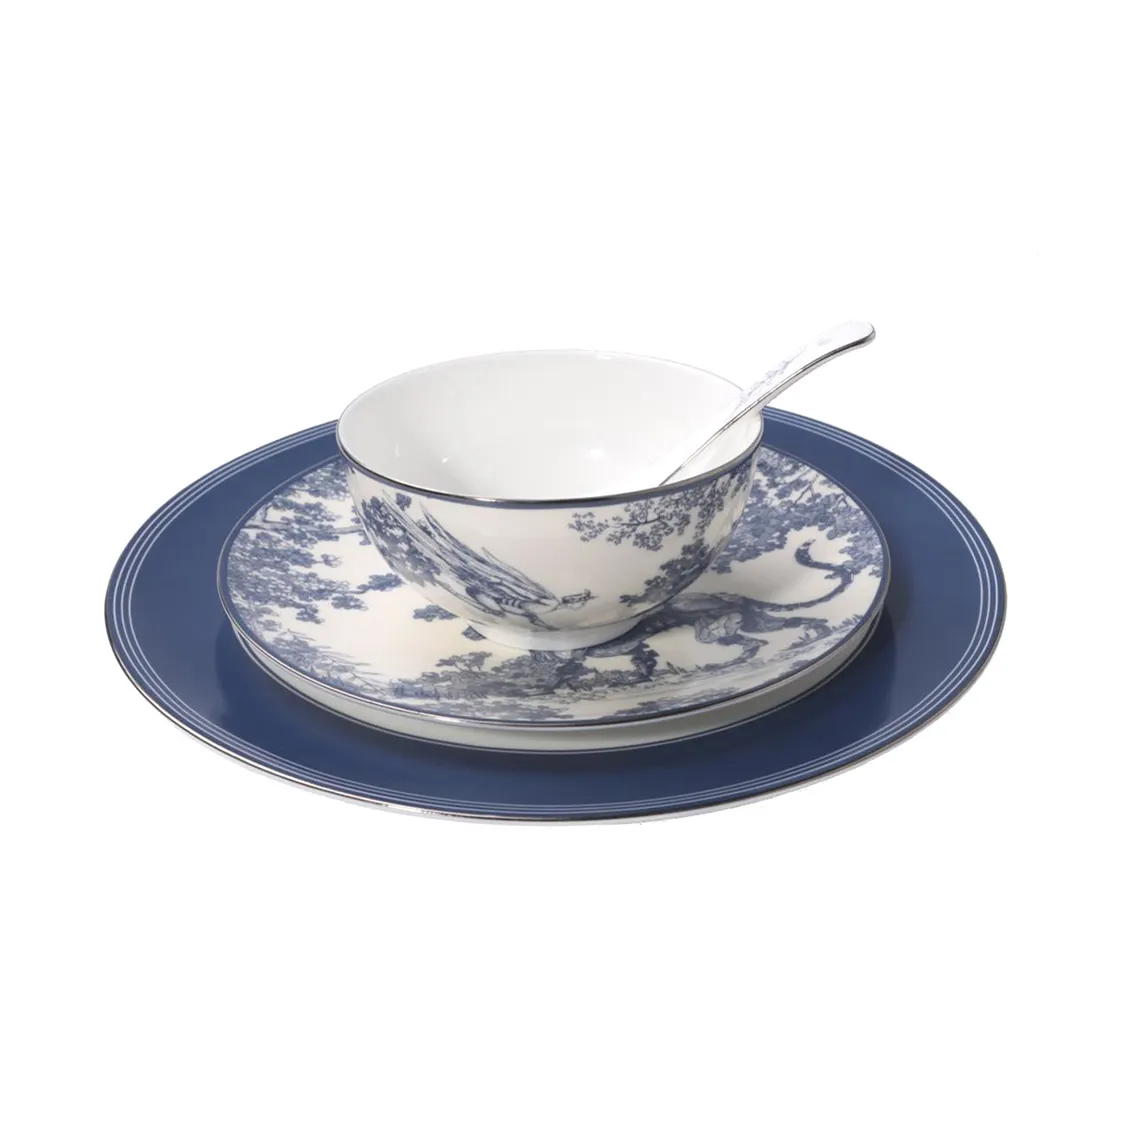 Vajilla de porcelana de estilo chino pintado a mano, juego de vajilla de porcelana azul y blanca, 4 juegos de 16 en total